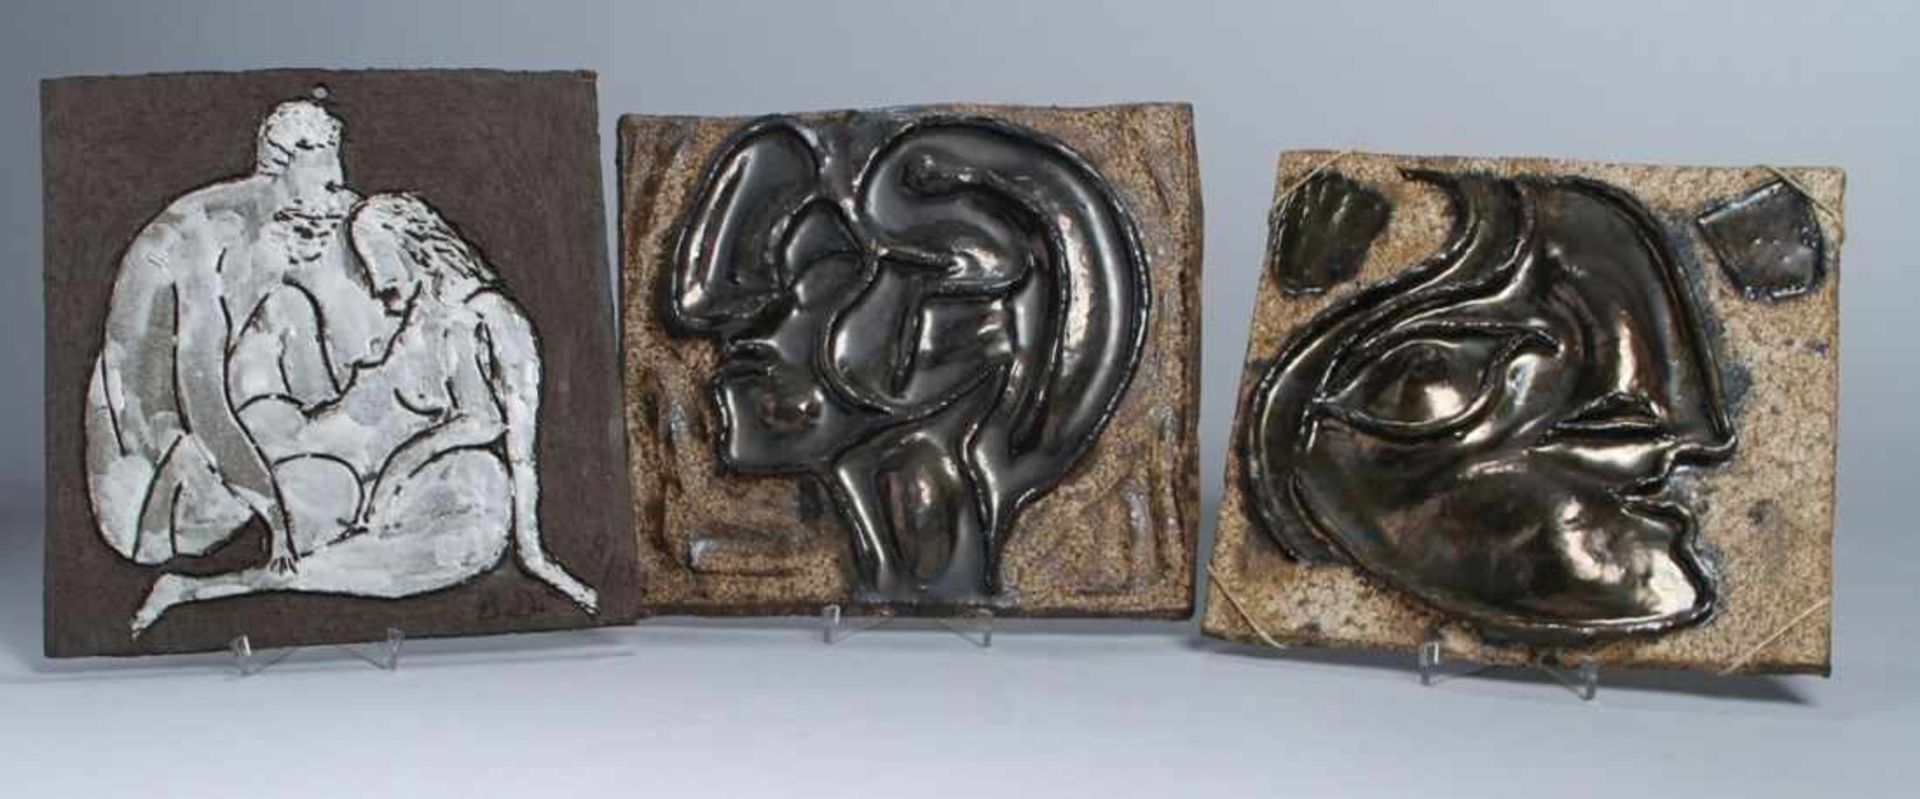 Drei Keramik-Wandplatten, zeitgenössischer, monogrammierender Künstler B.D.,unterschiedliche